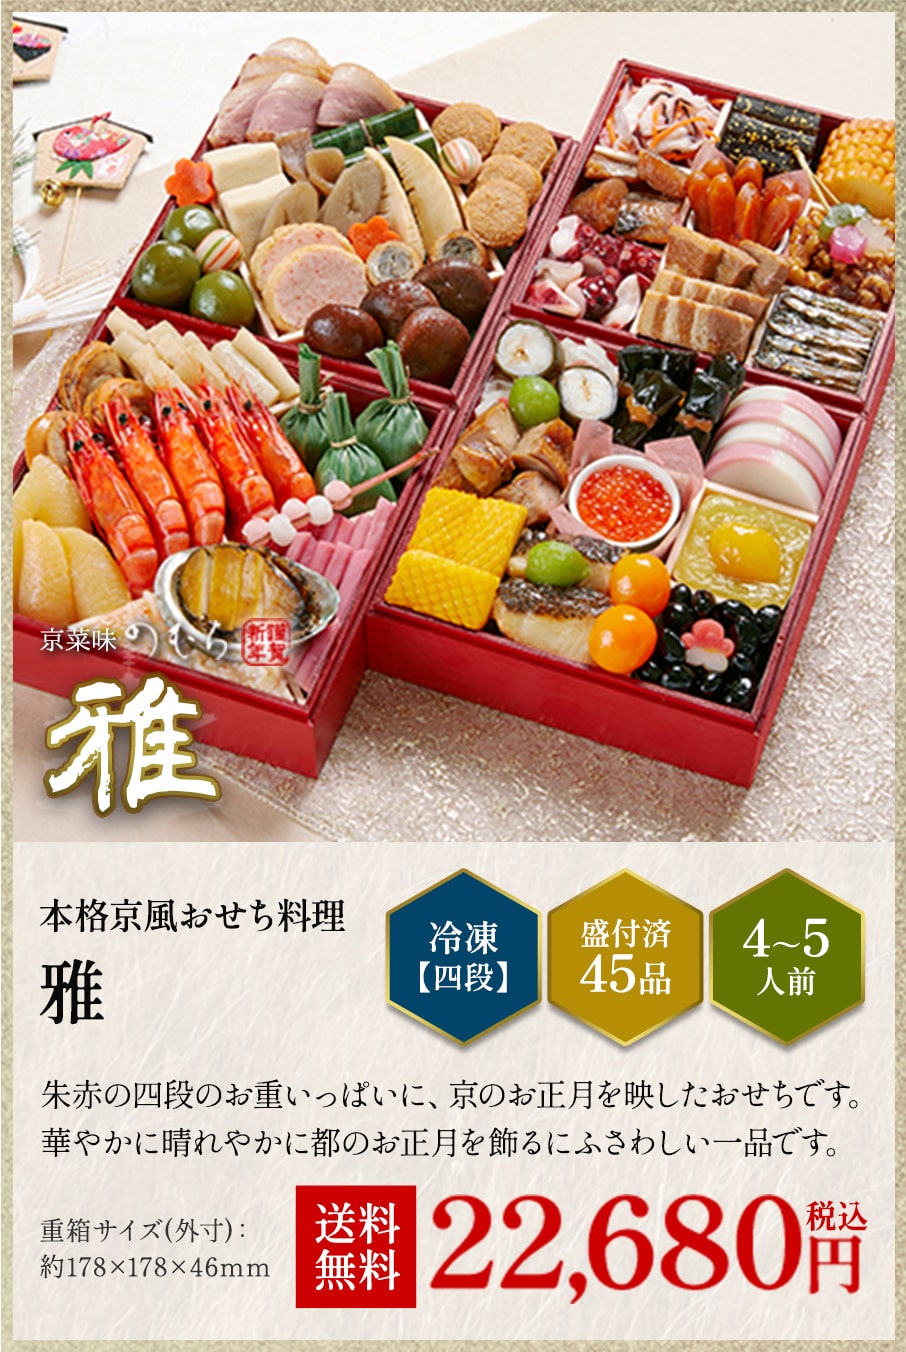 本格京風おせち料理「雅」冷凍四段 盛付済み45品 4~5人前 22,680円